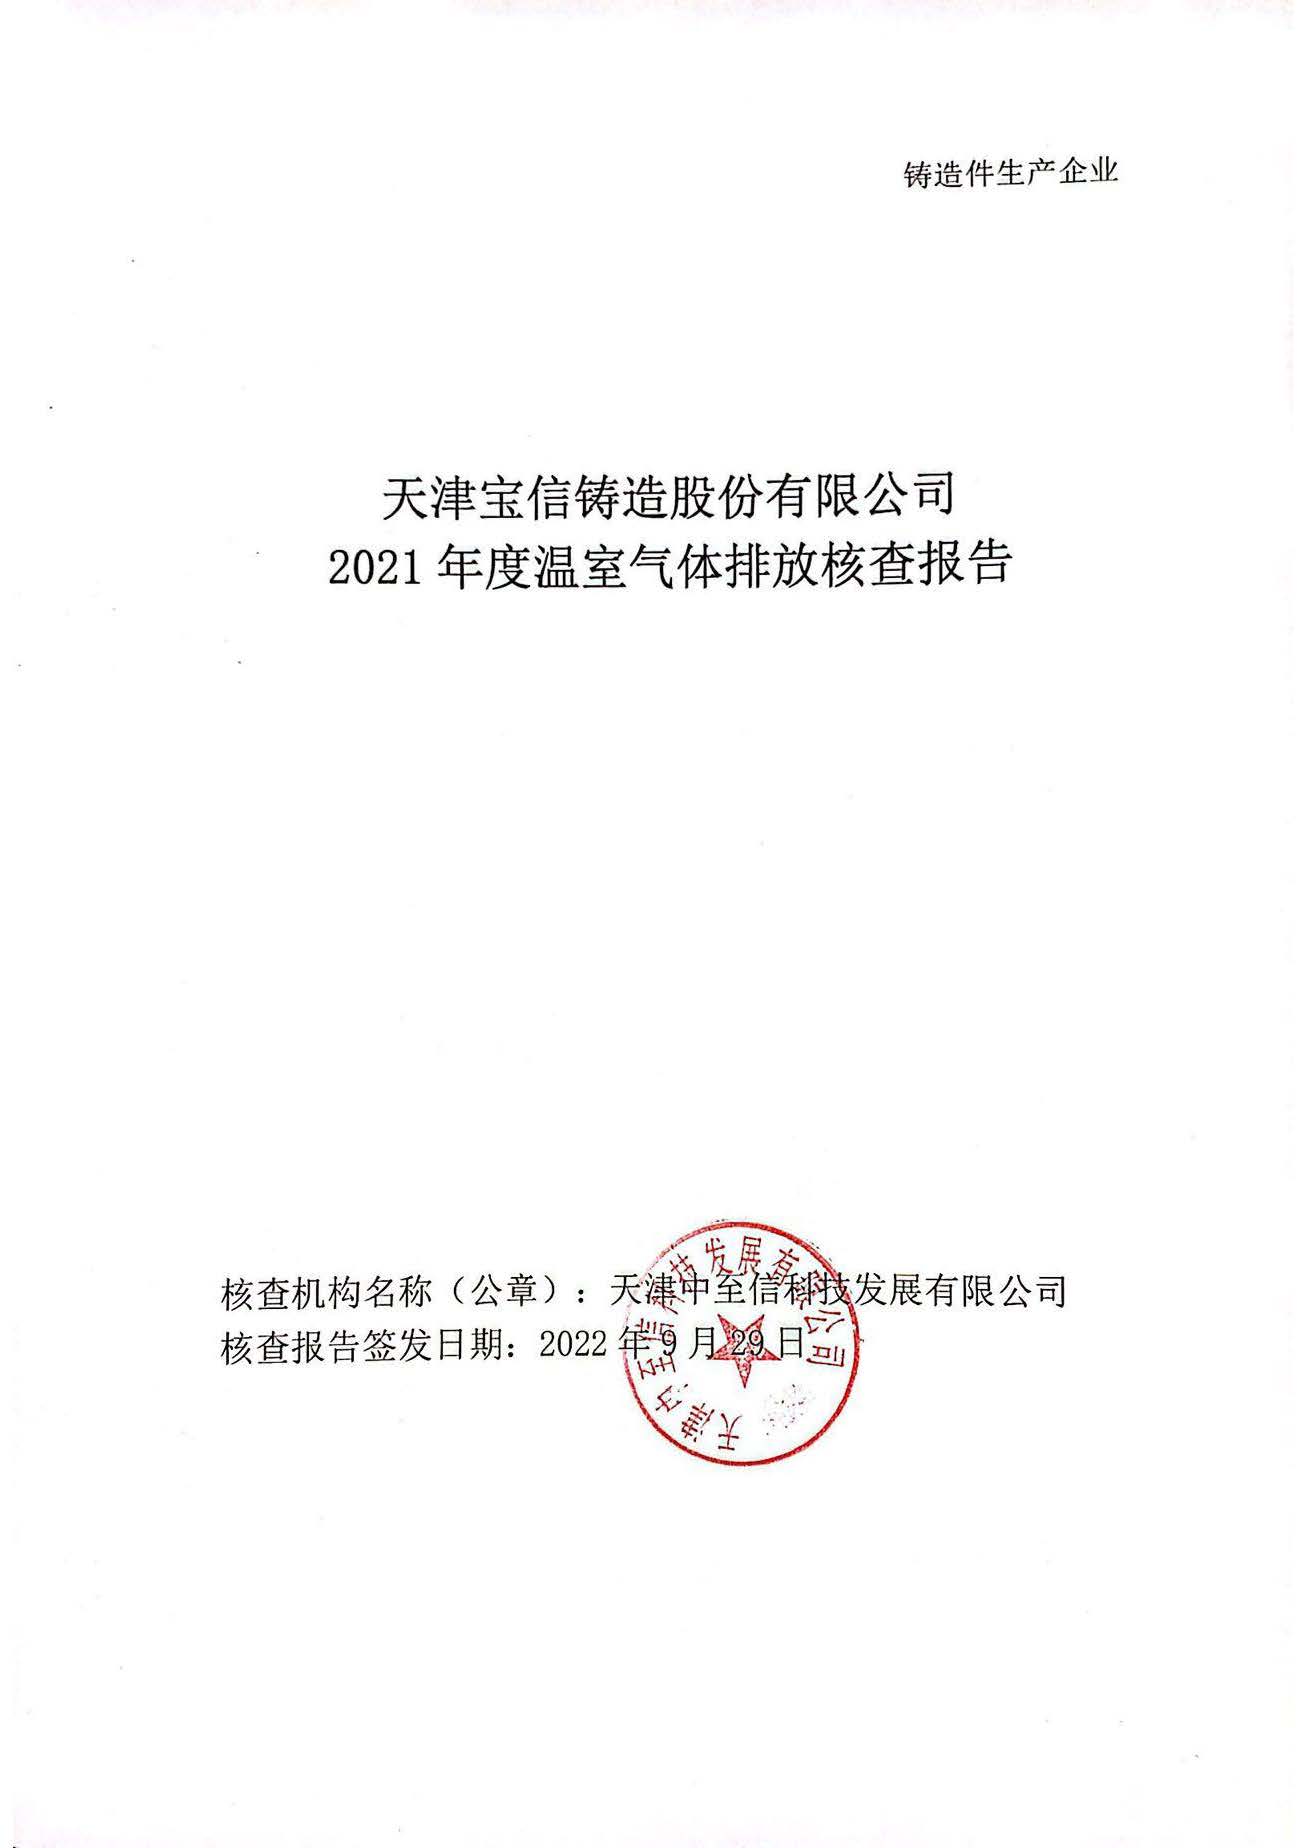 天津宝信铸造股份有限公司2021年度温室气体核查报告公示